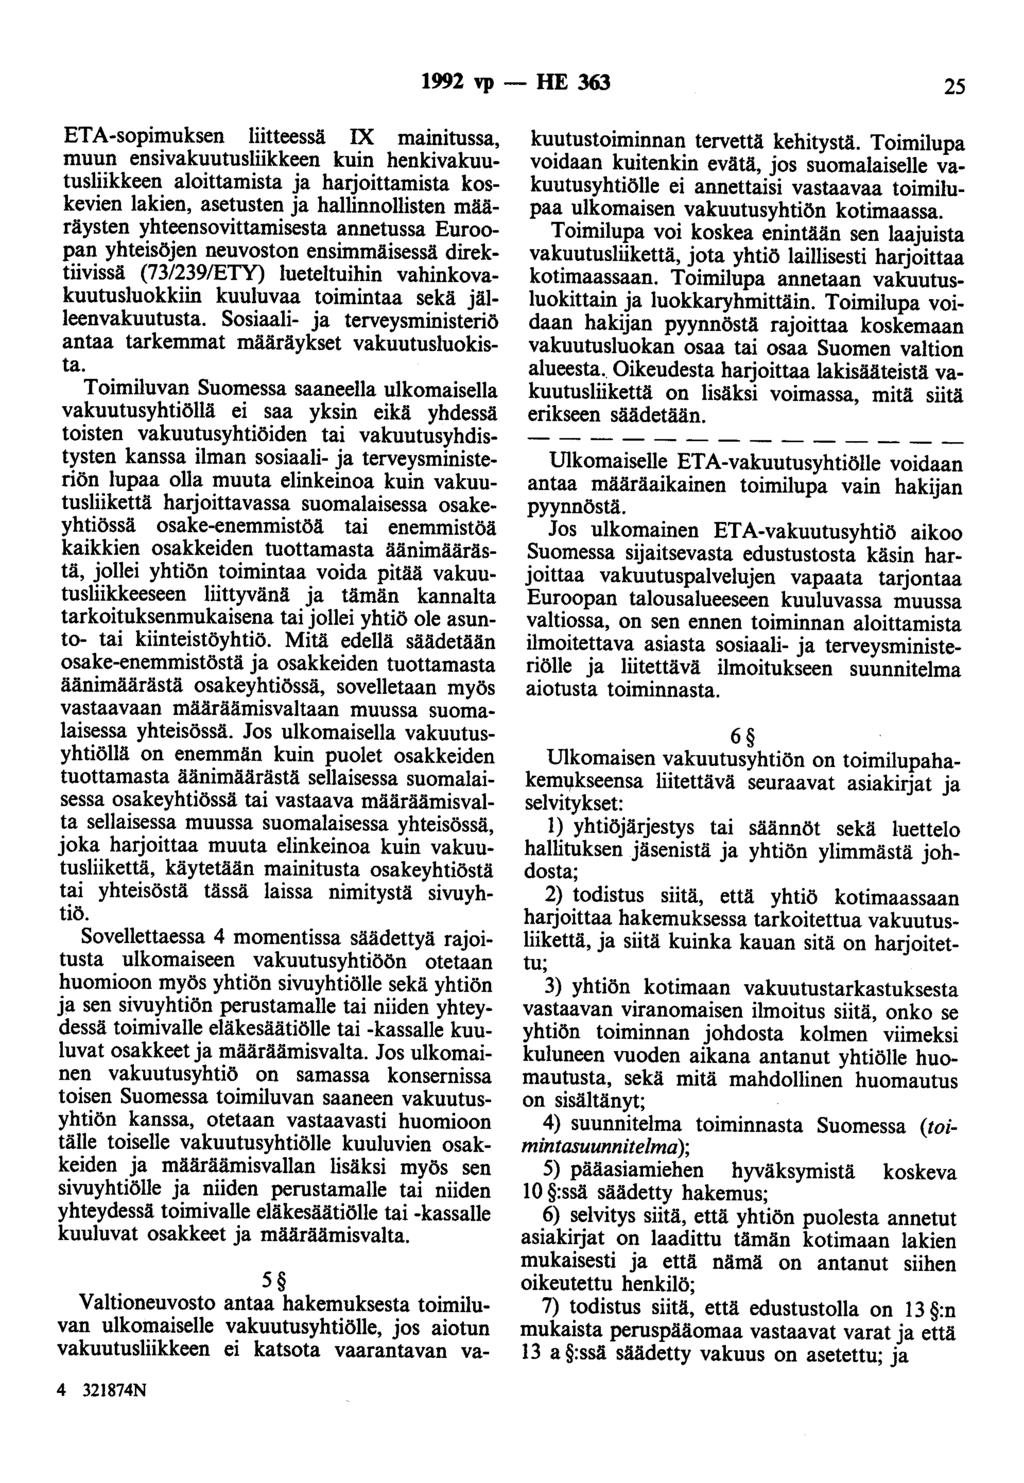 1992 vp - HE 363 25 ETA-sopimuksen liitteessä IX mainitussa, muun ensivakuutusliikkeen kuin henkivakuutusliikkeen aloittamista ja harjoittamista koskevien lakien, asetusten ja hallinnollisten